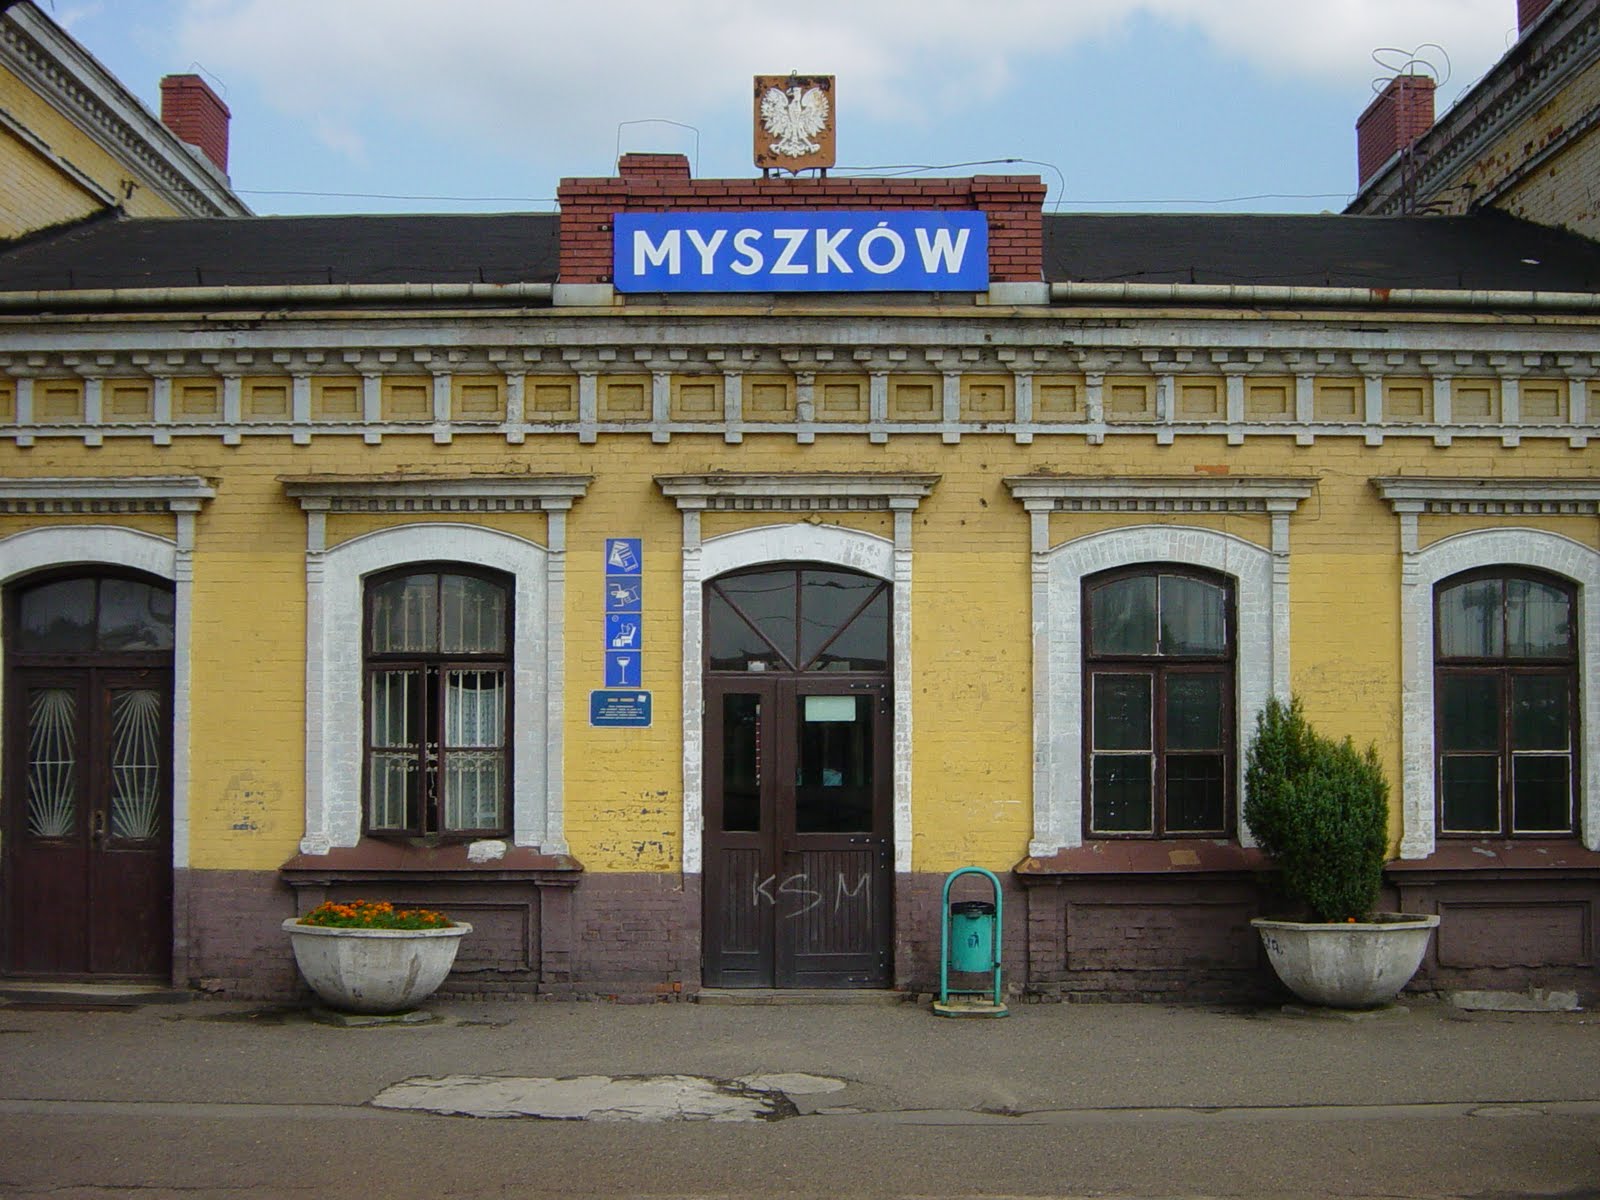 Myszkow